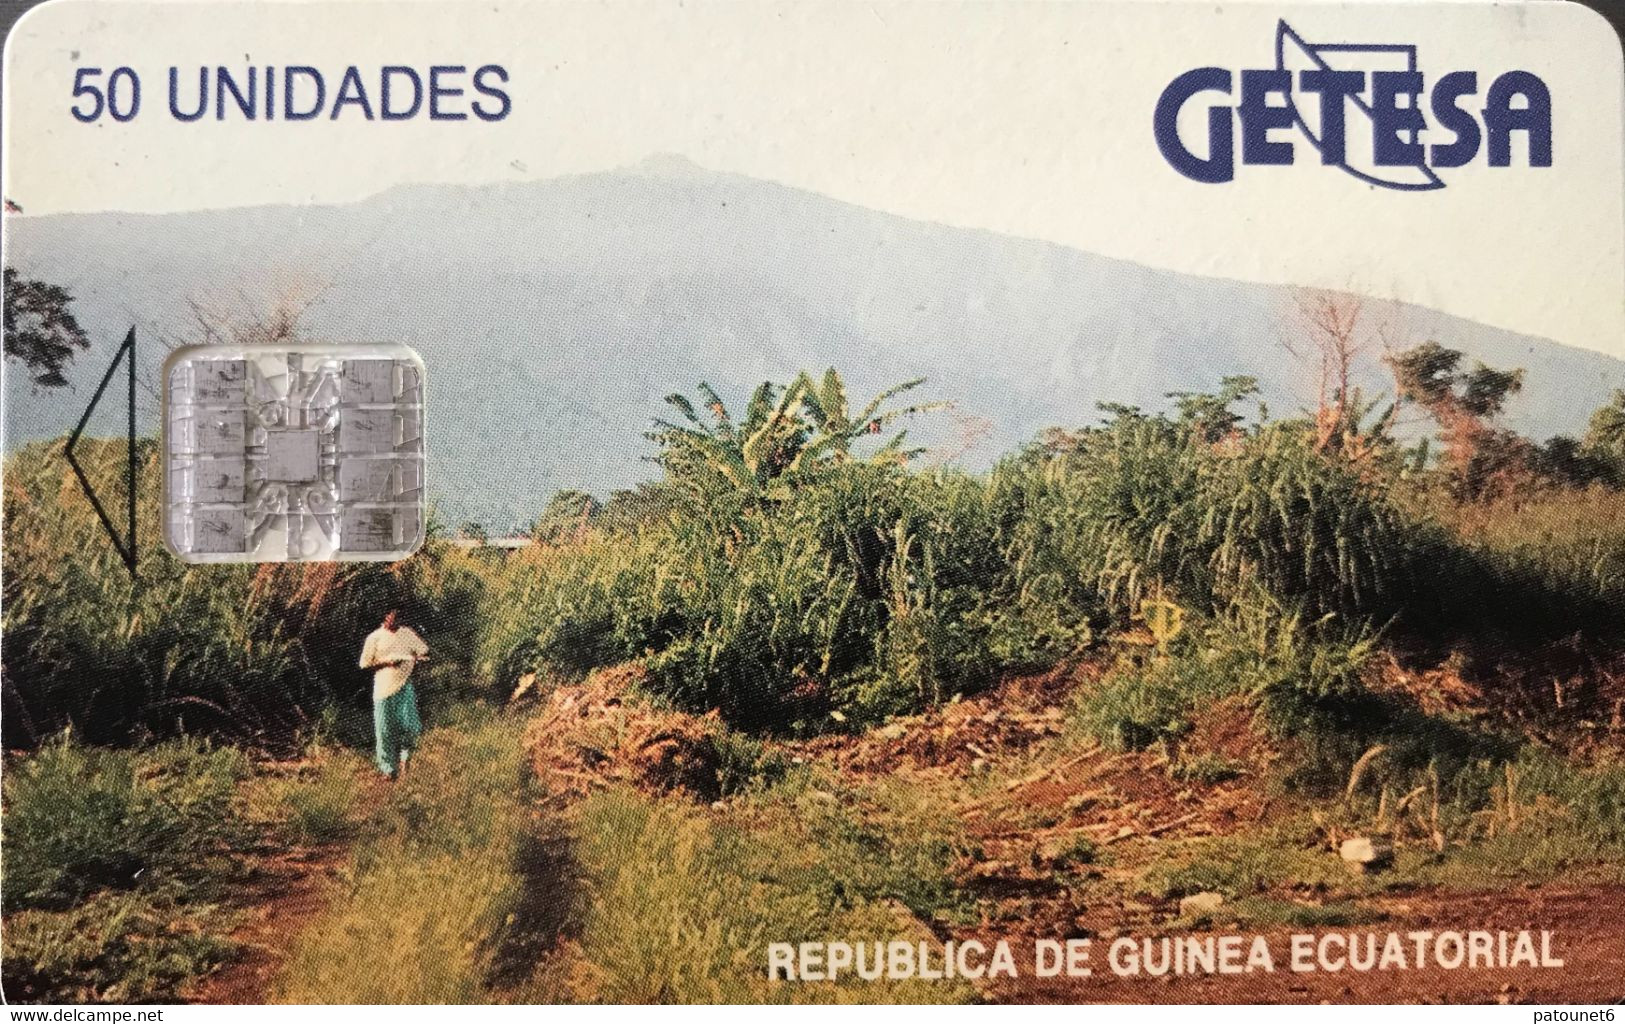 GUINEE-EQUATORIALE  -  Phonecard  -  GETESA - SC7 -  50 Unidades - Equatoriaal Guinea